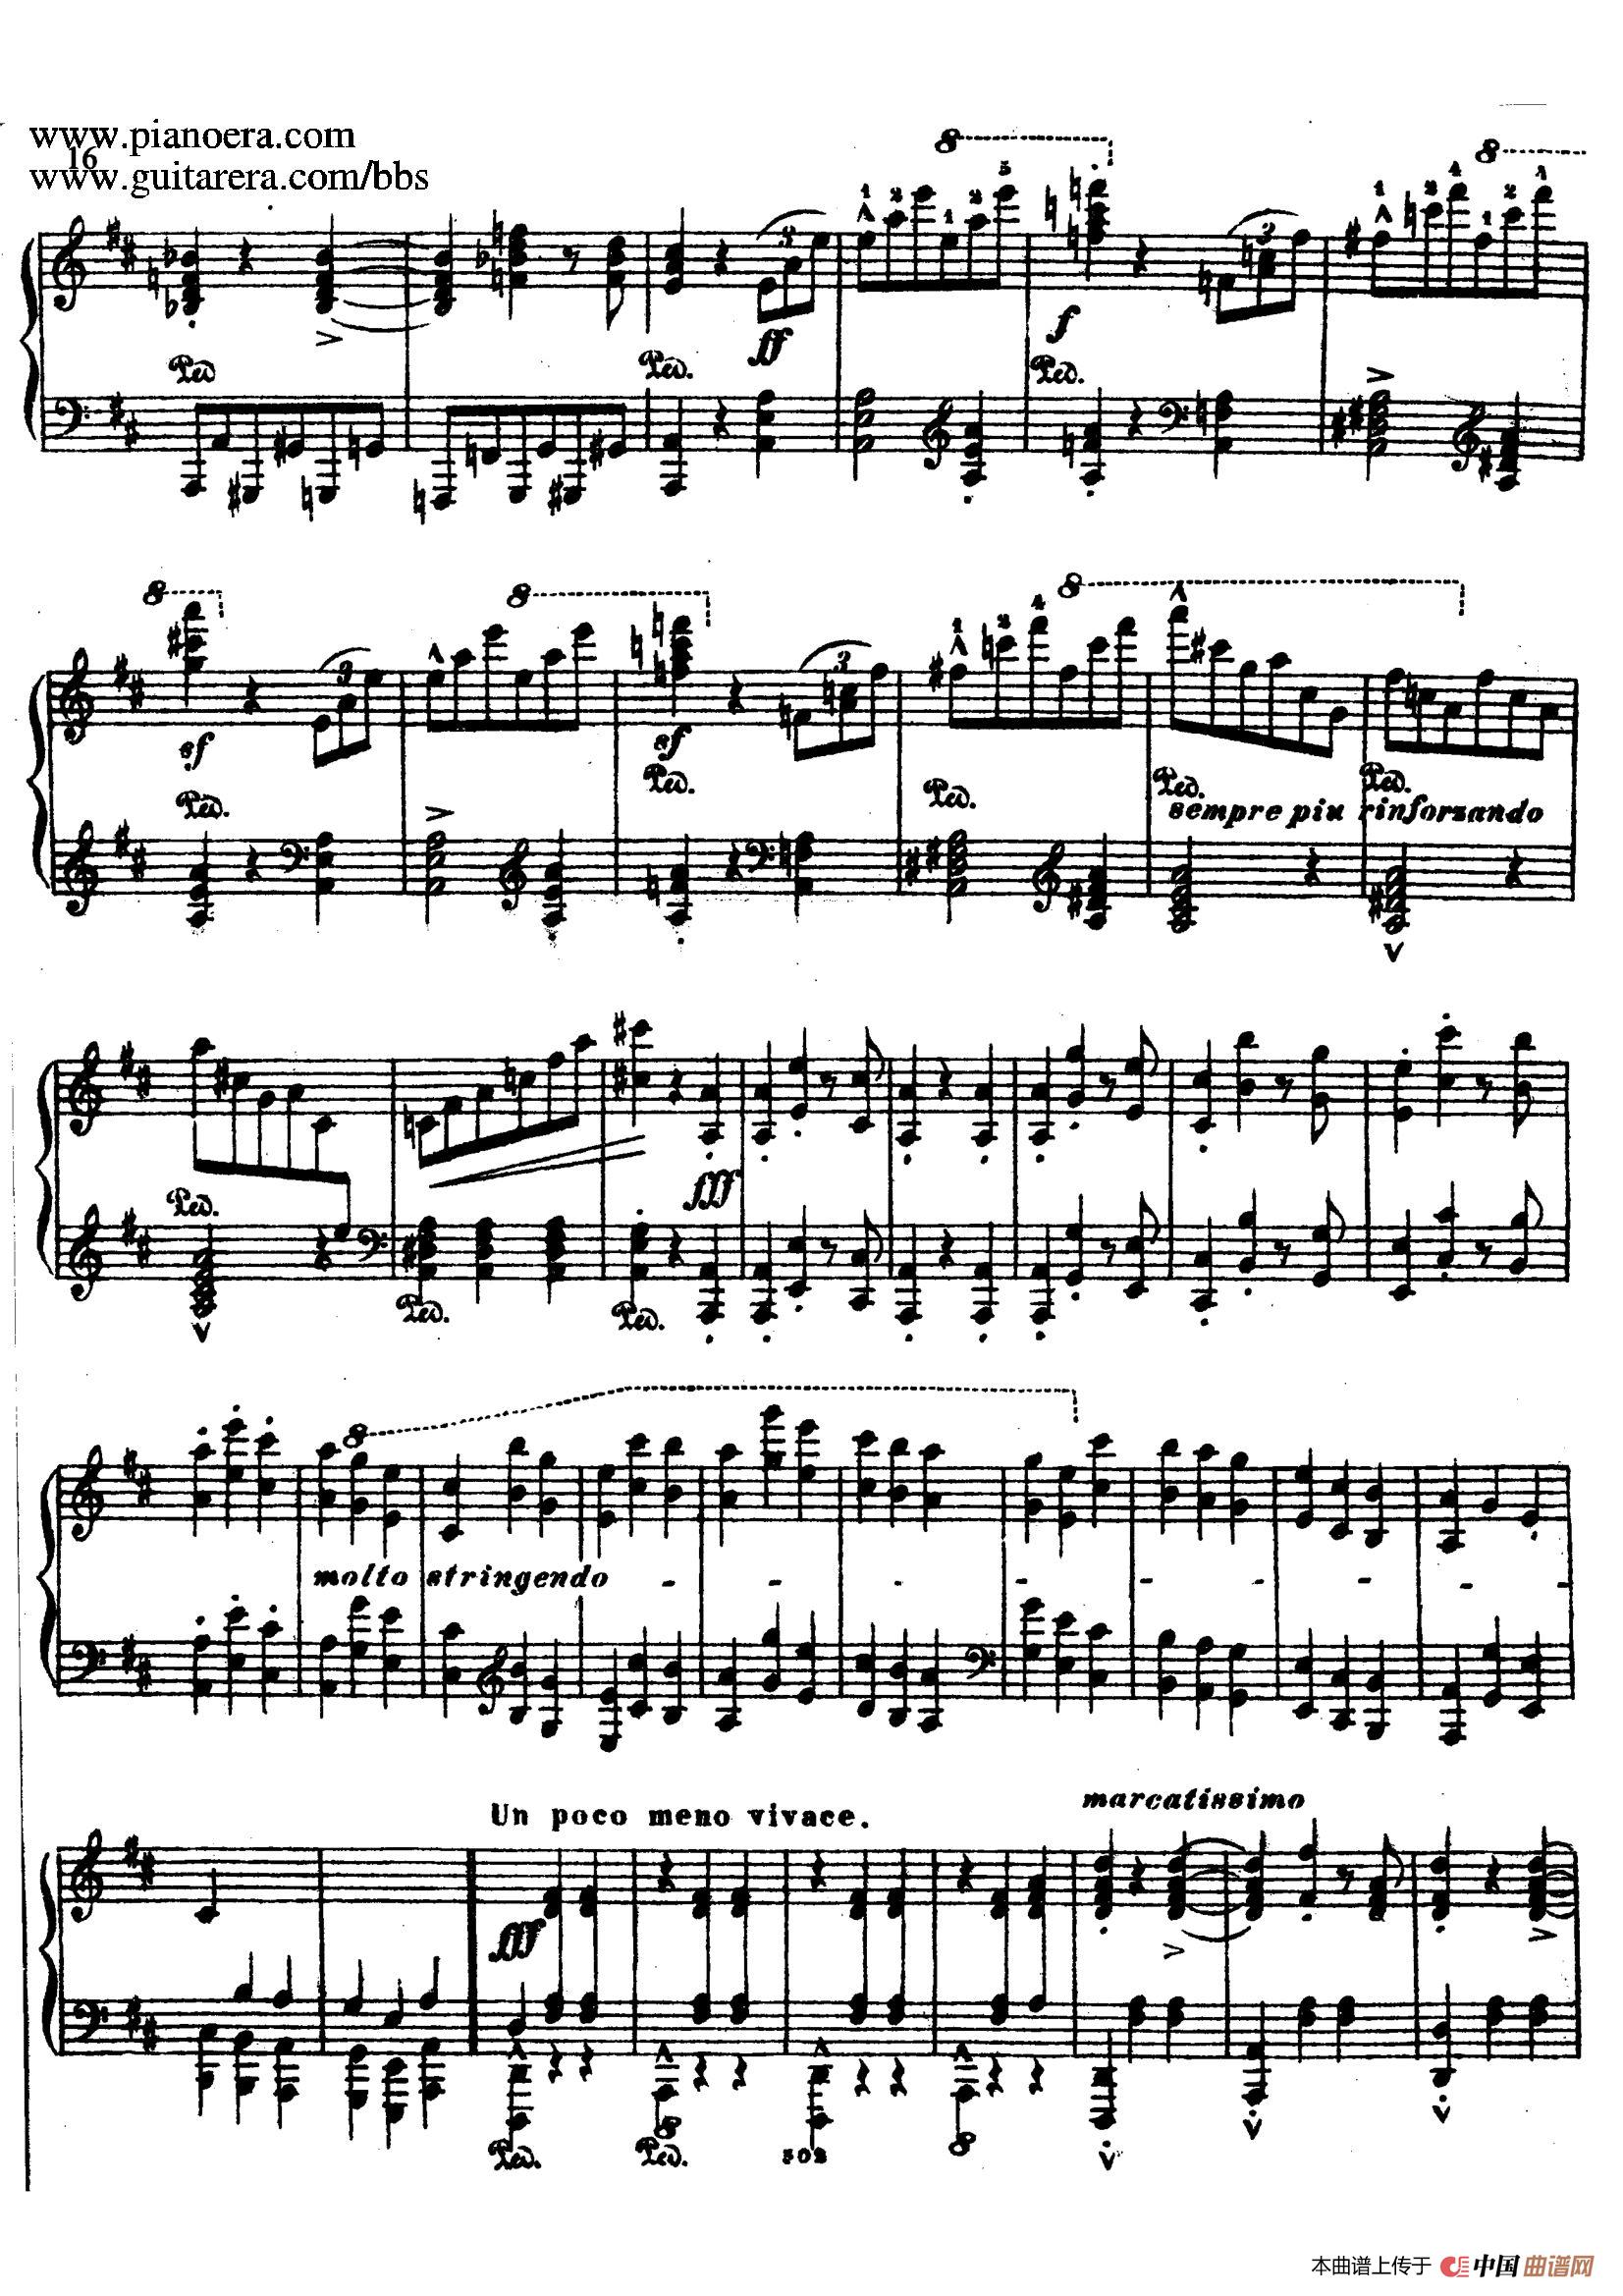 《浮士德圆舞曲 Faust Valse》钢琴曲谱图分享